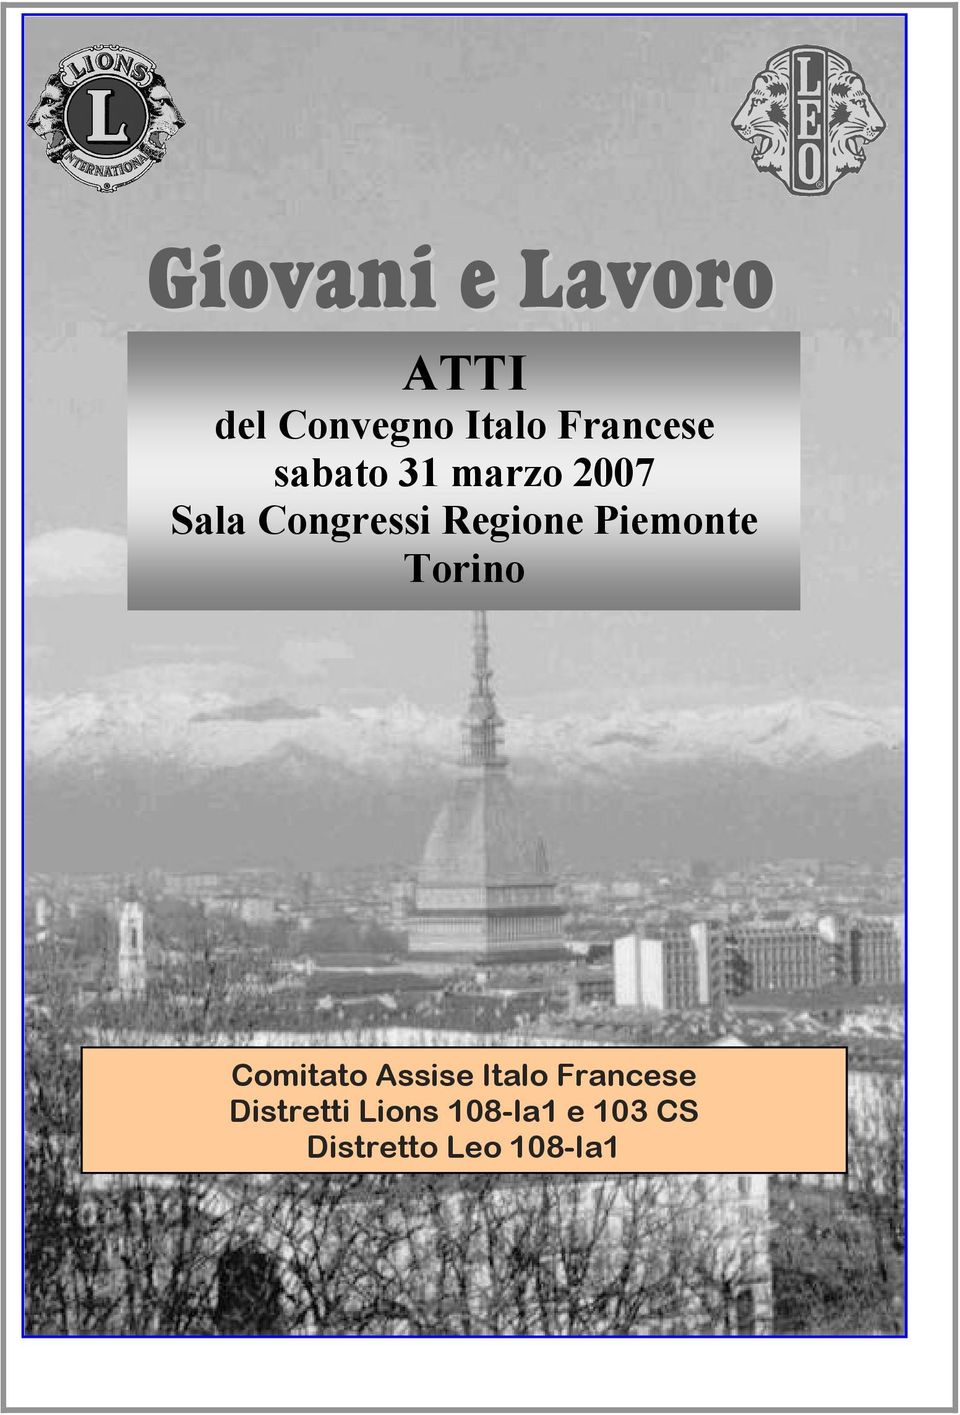 Regione Piemonte Torino Comitato Assise Italo